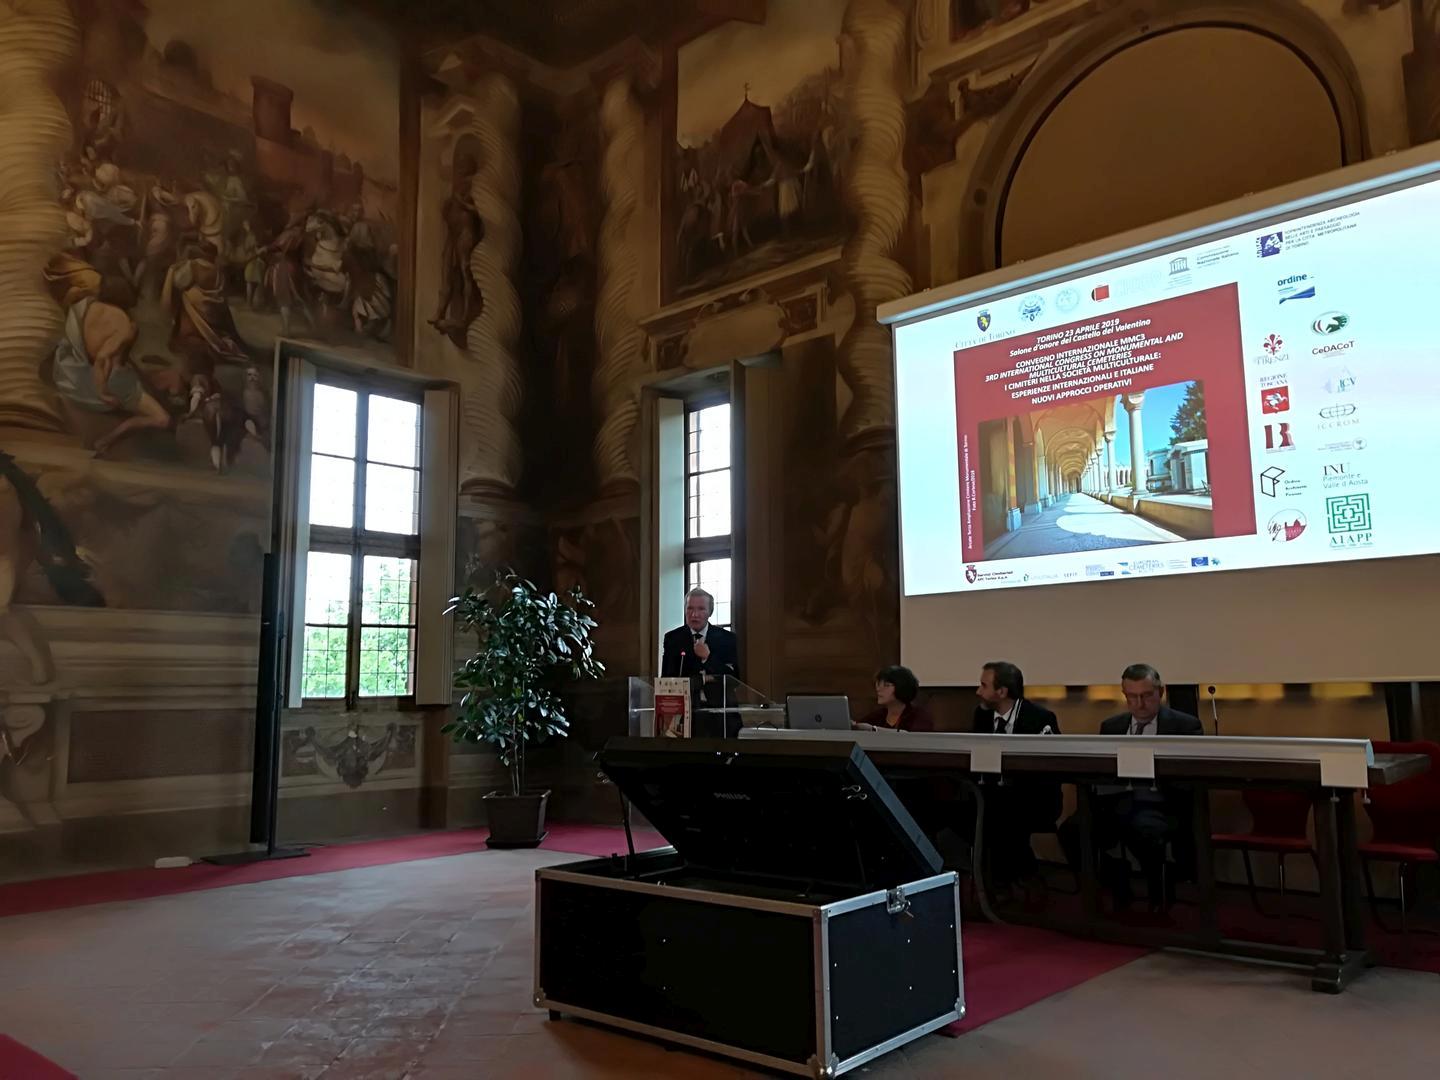 MMC3 Conferences at Castello del Valentino, Turin